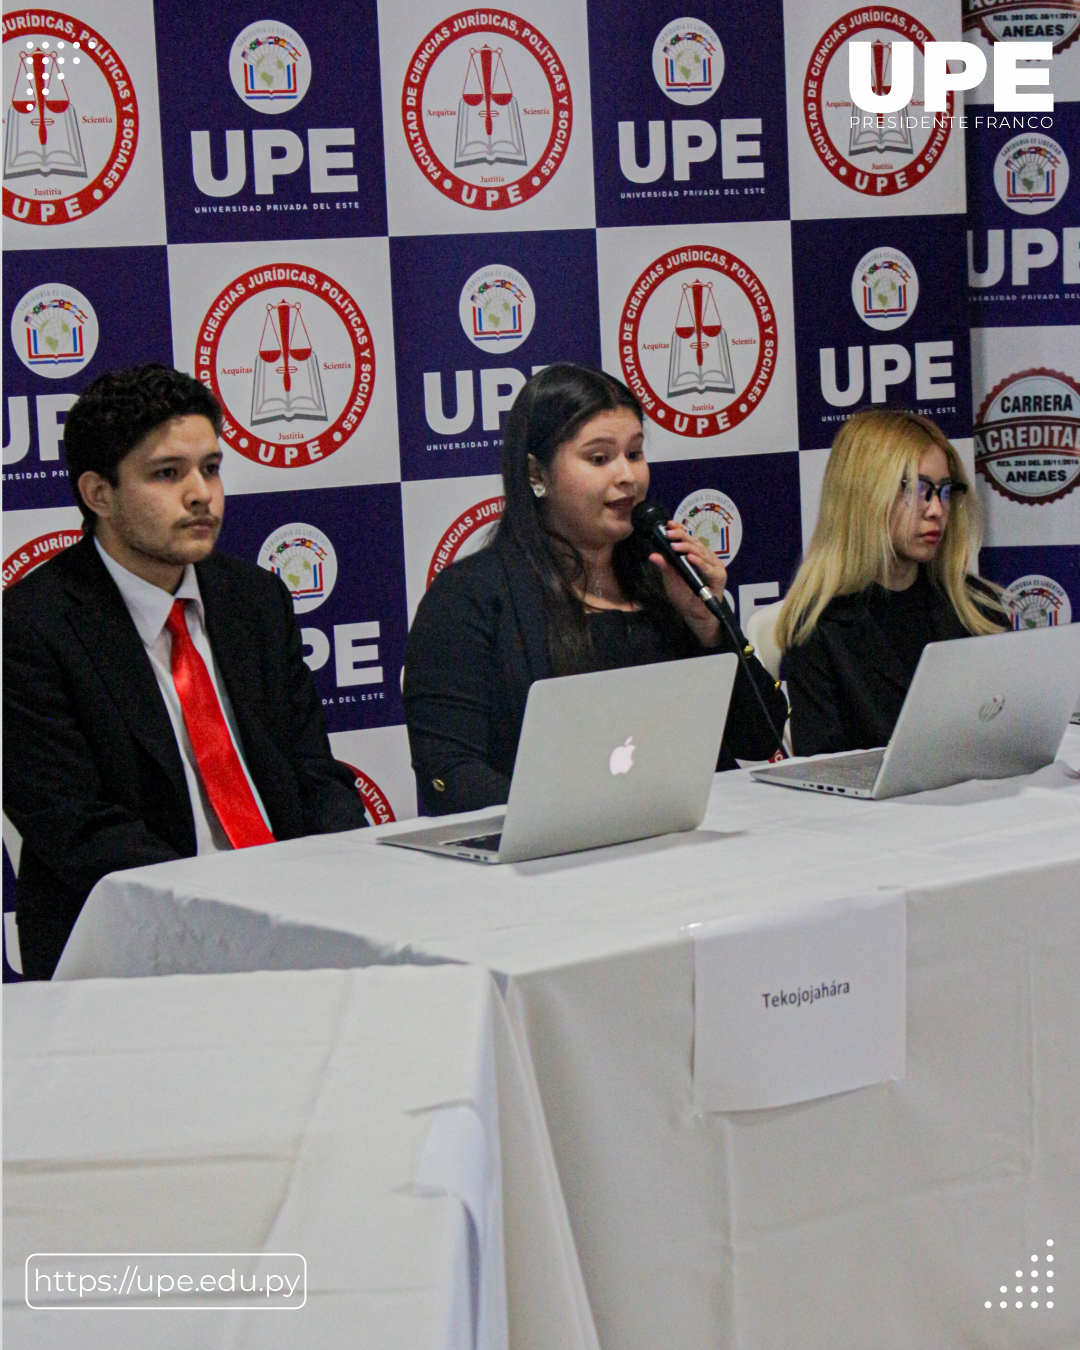 Estudiantes de Derecho UPE realizan Simulacro de Juicio Oral y Público